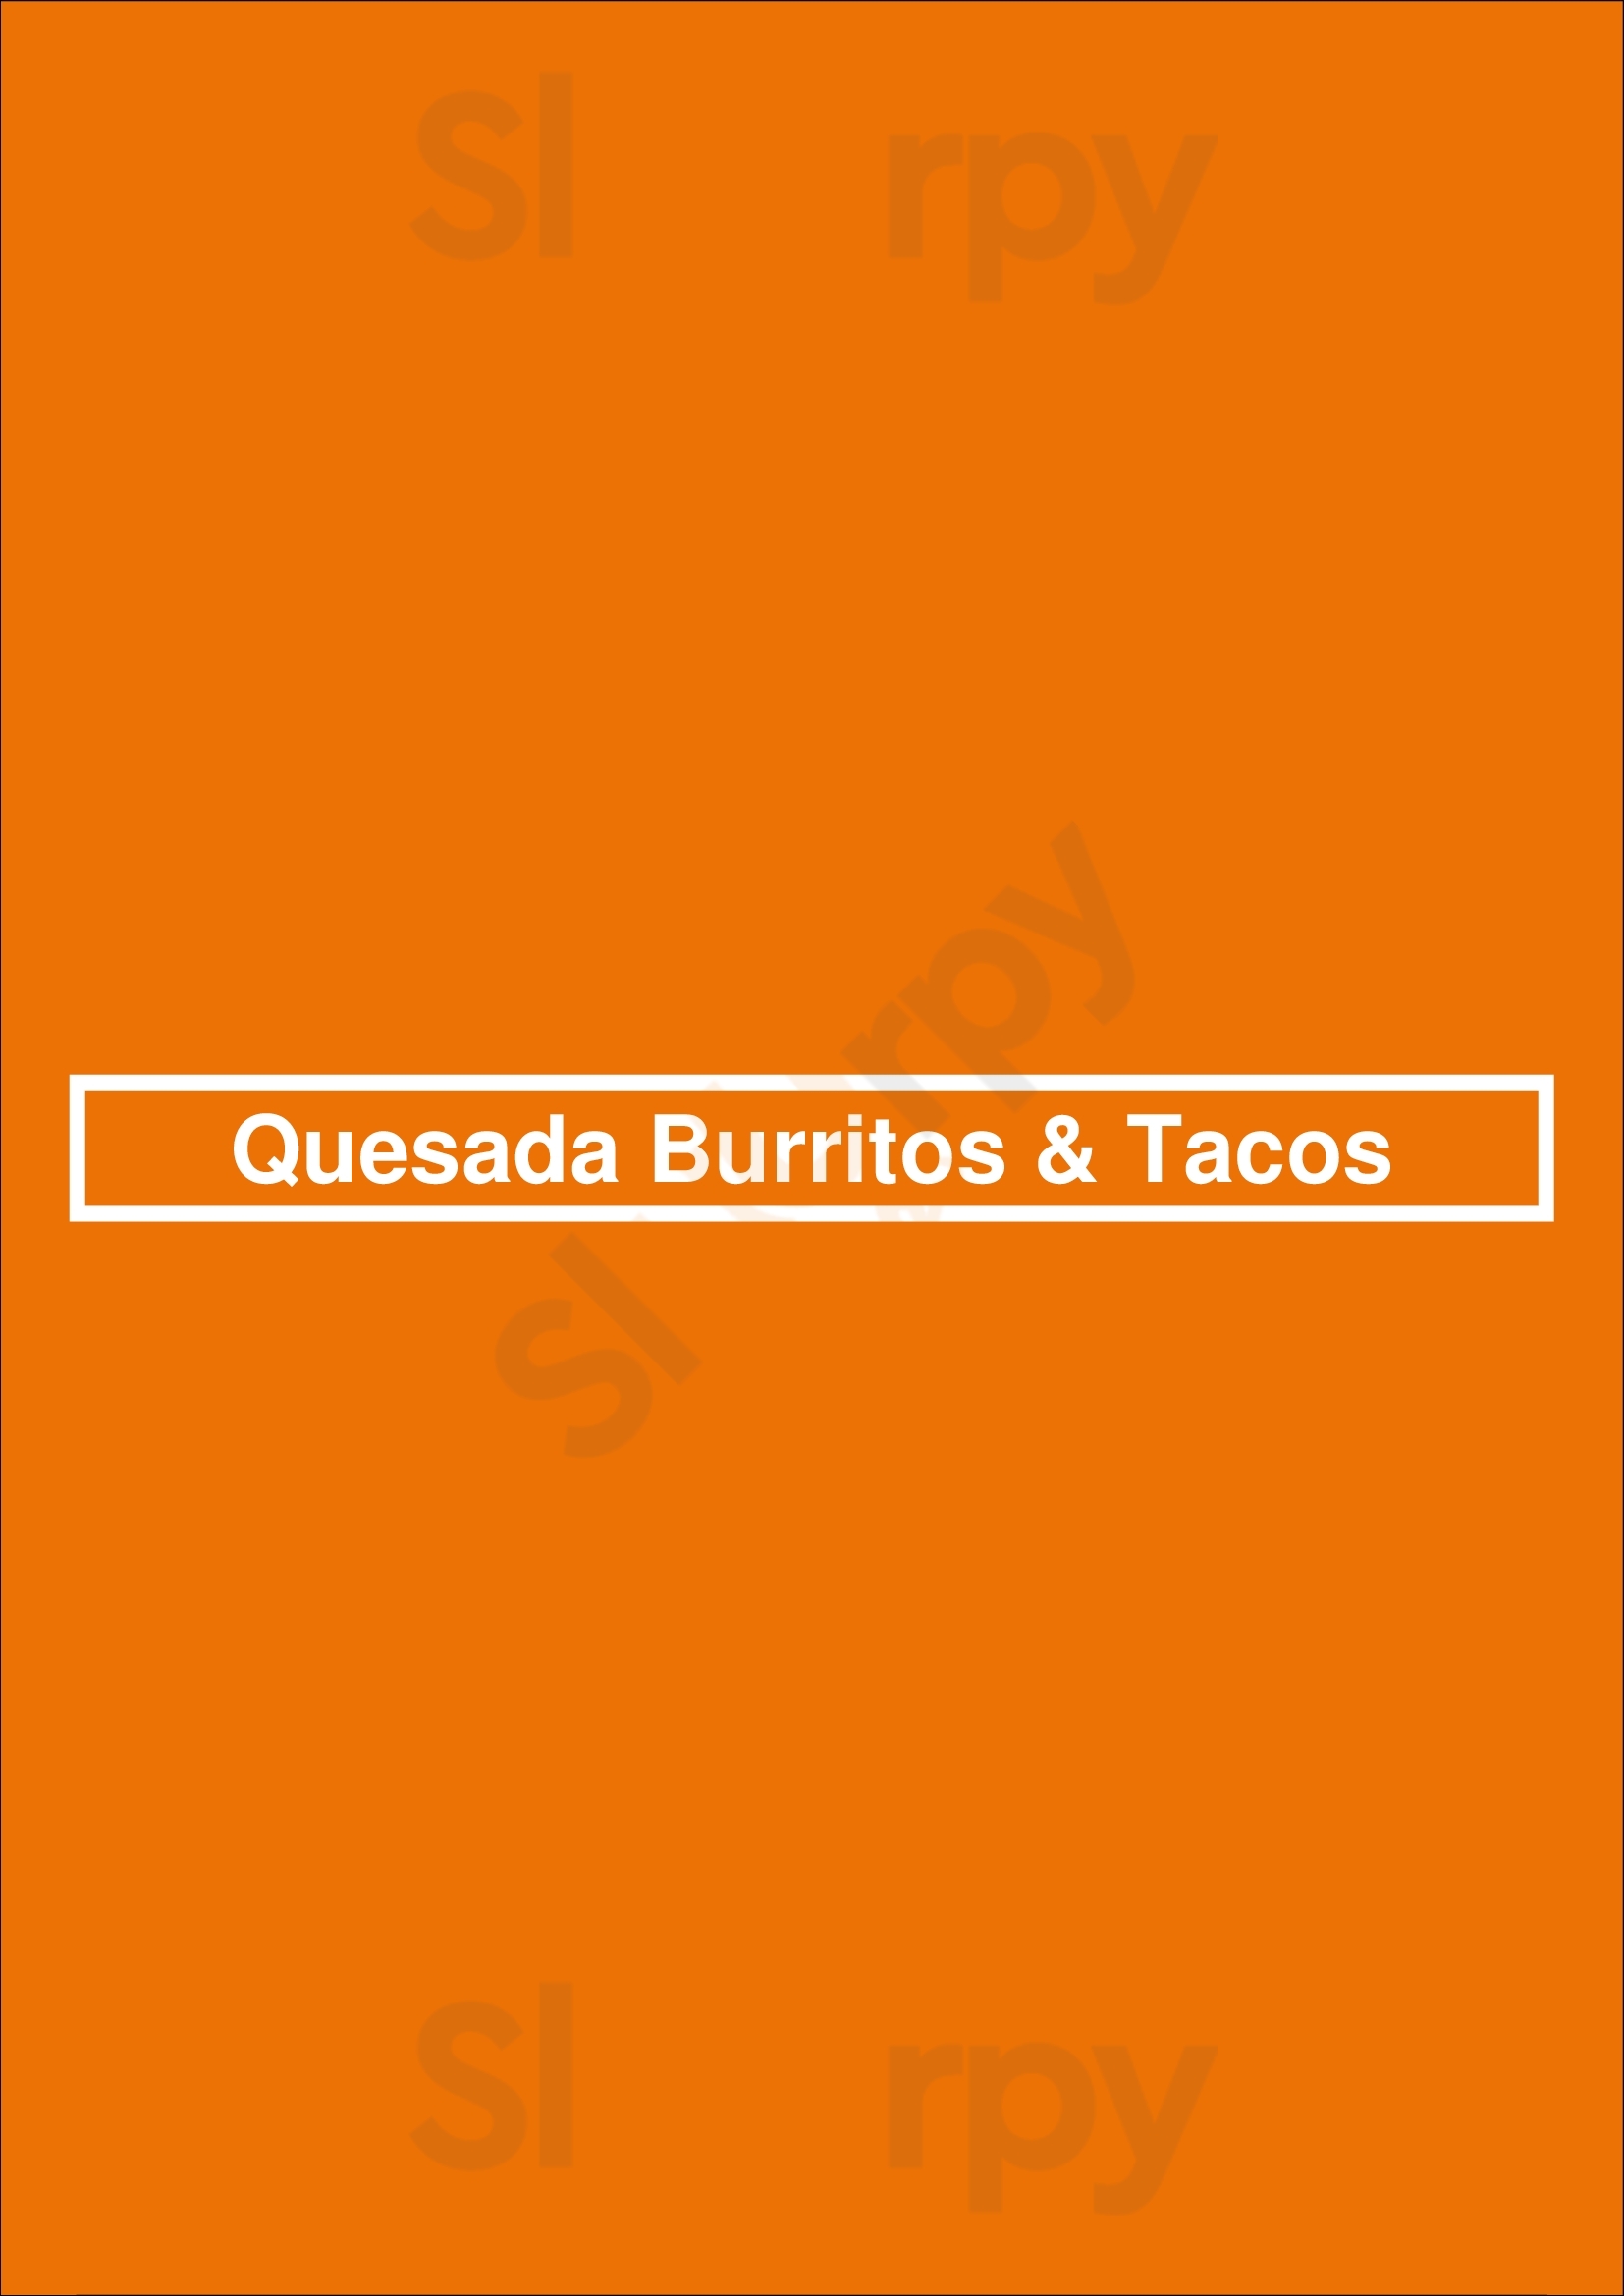 Quesada Burritos & Tacos Victoria Menu - 1